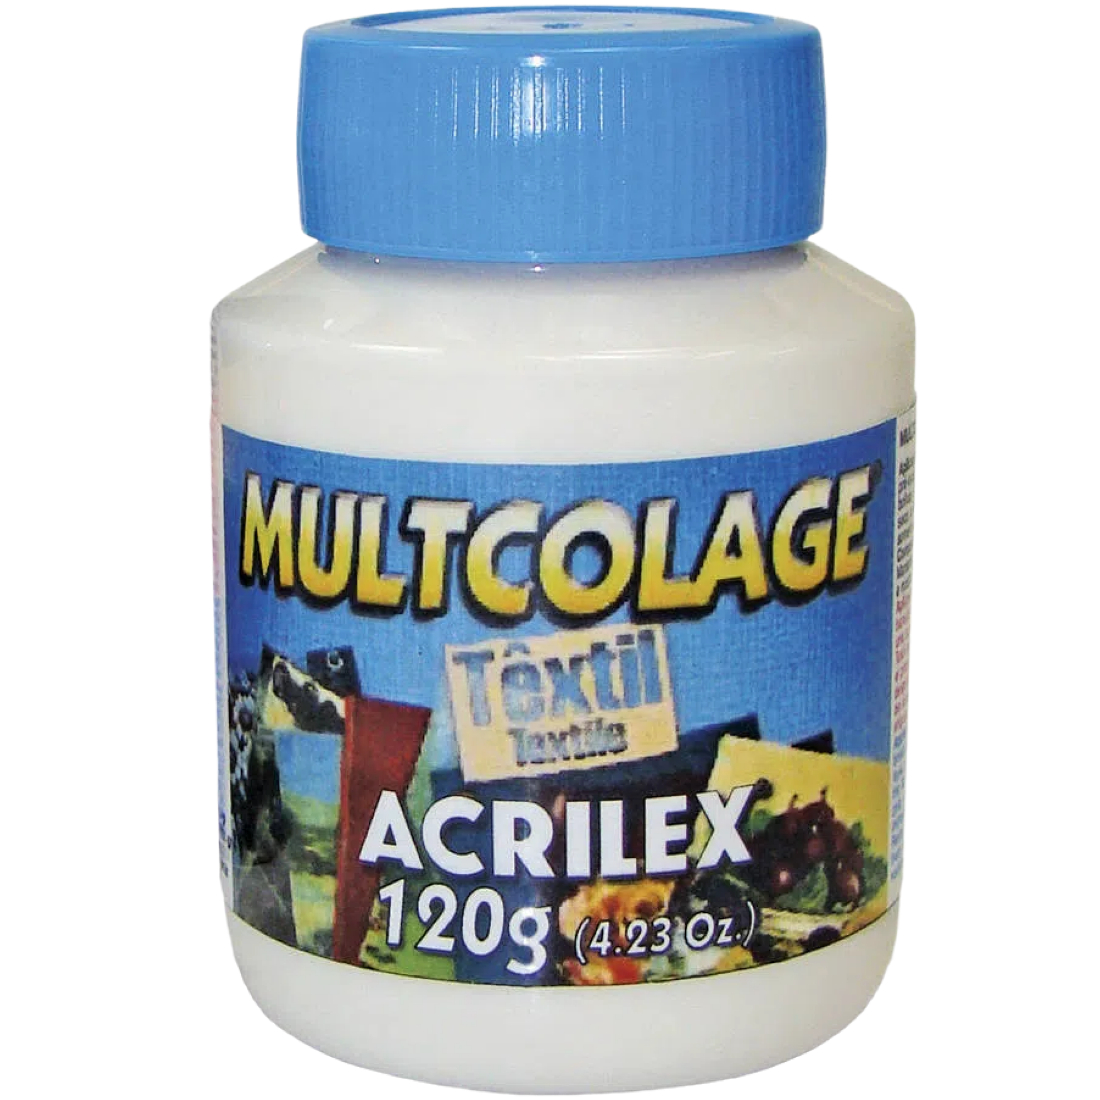 Cola Multcolage Têxtil Acrilex